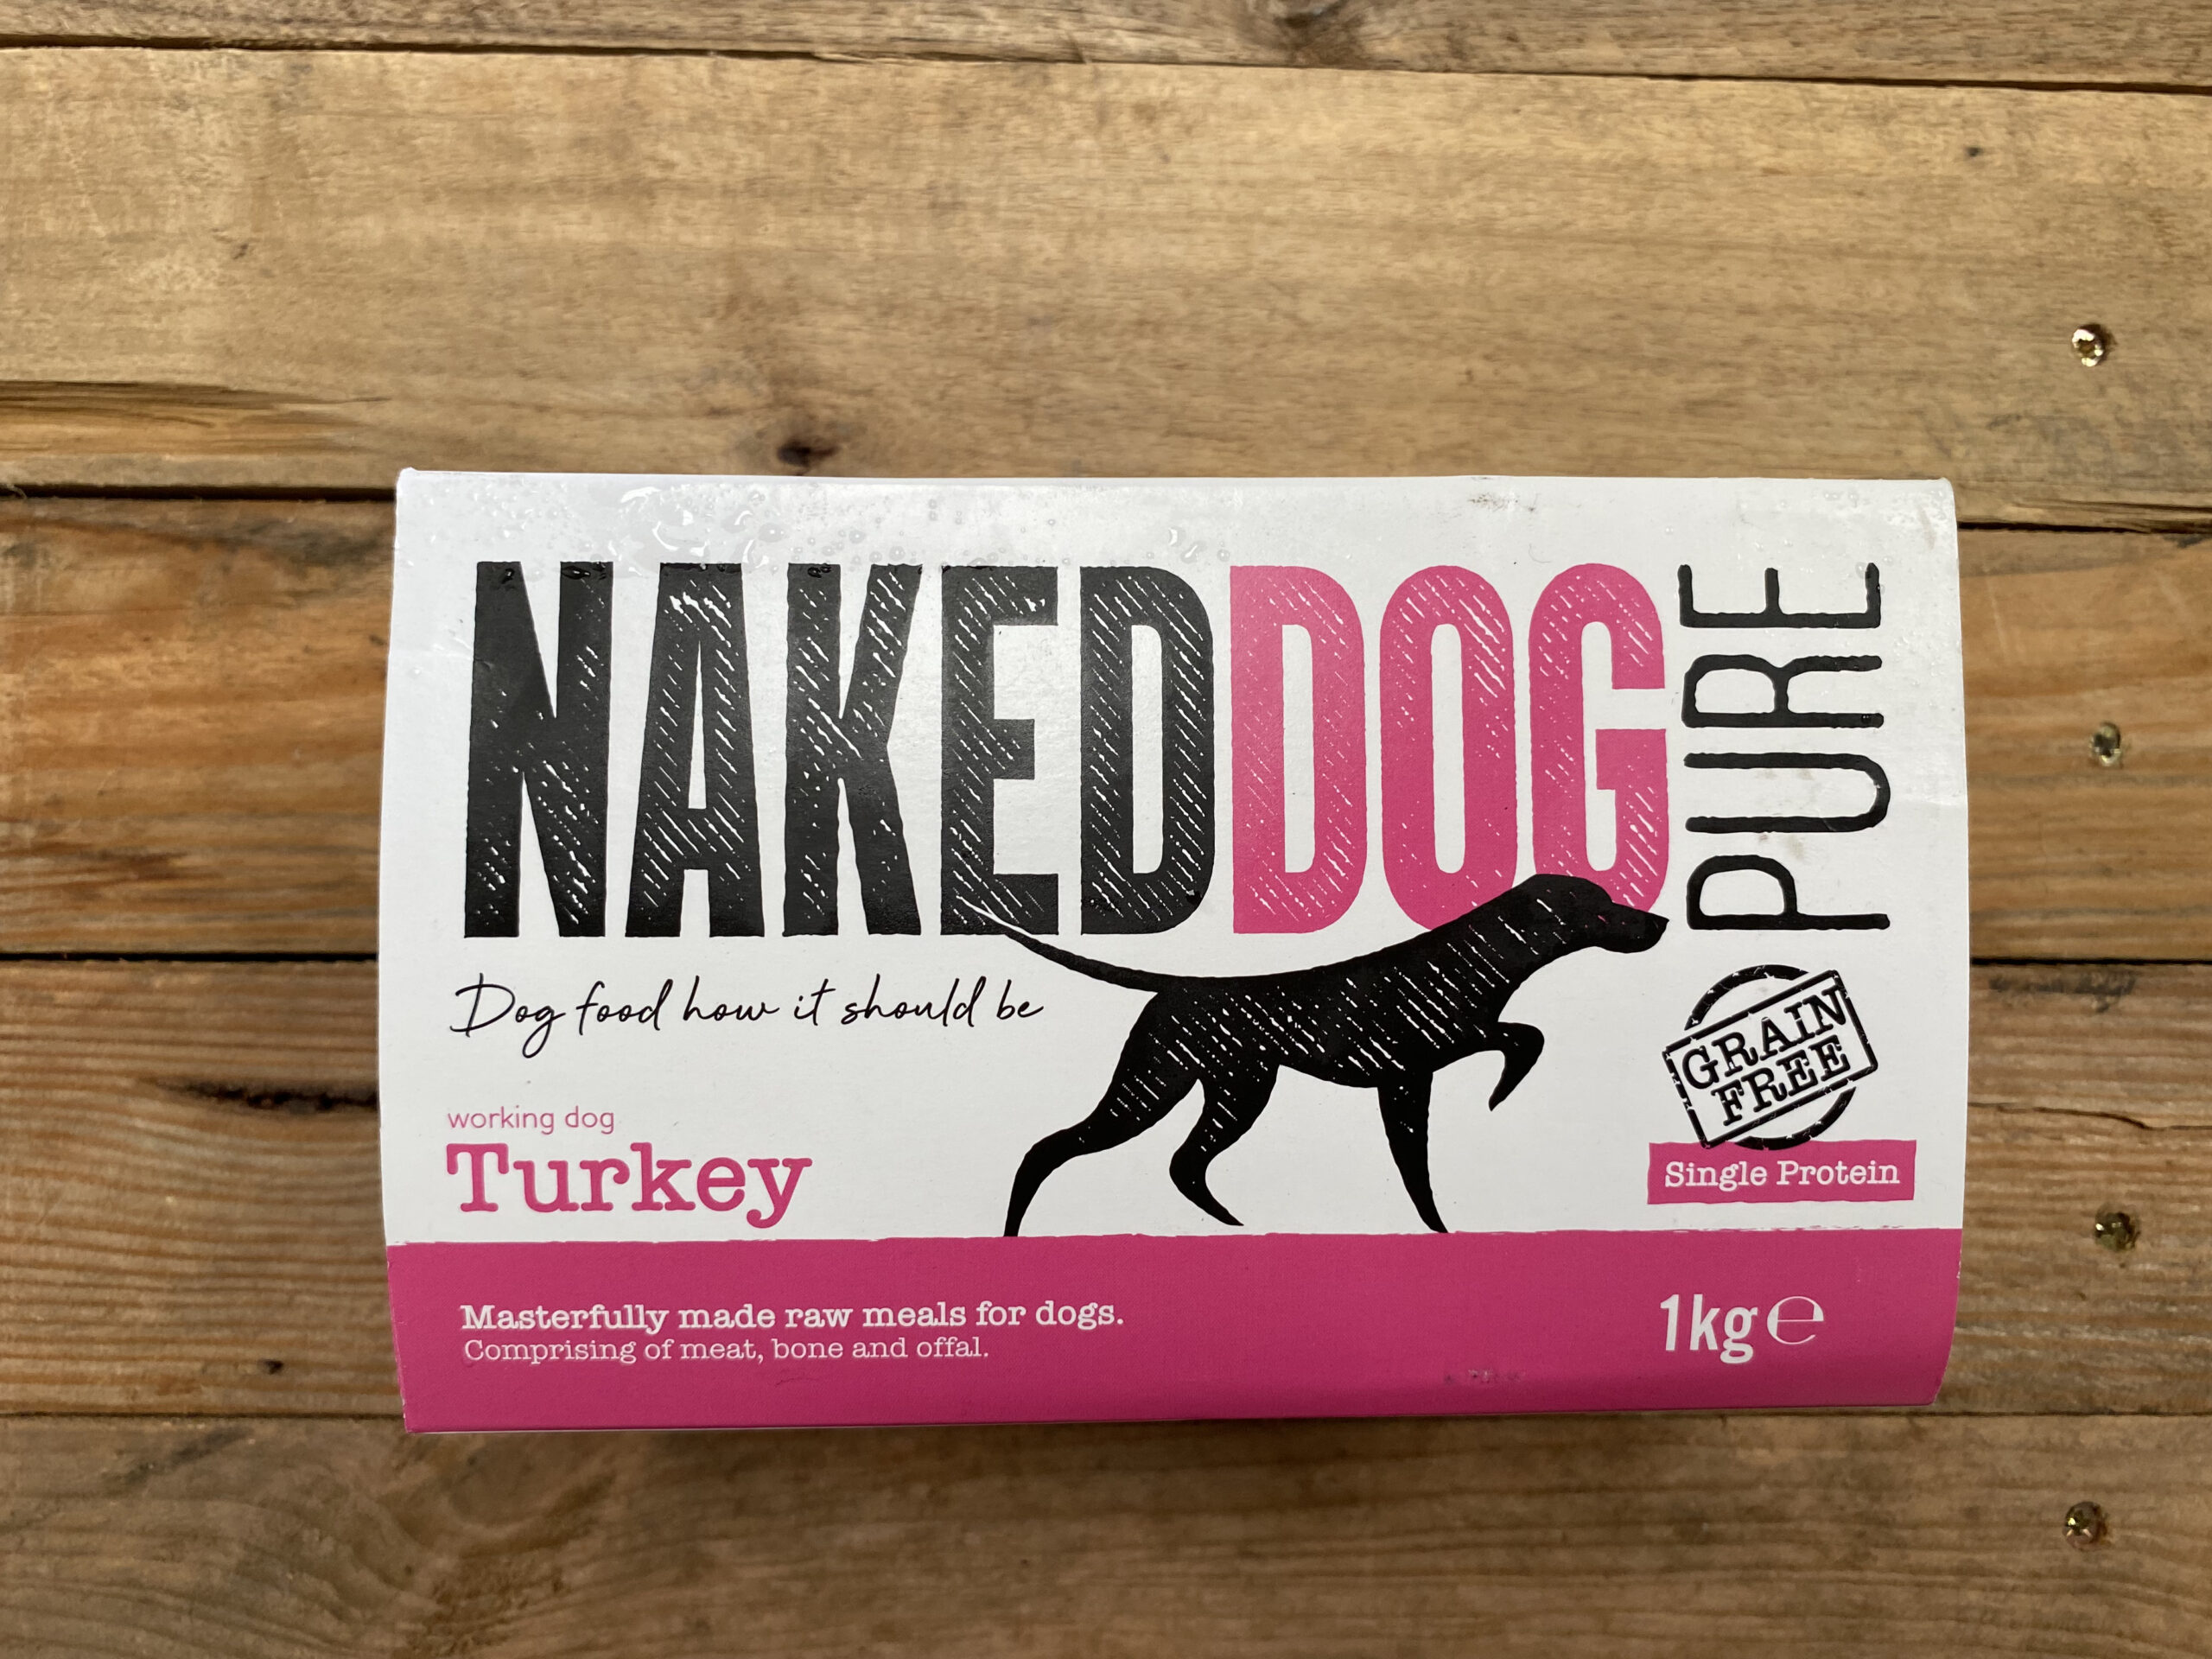 Naked Dog Pure Turkey – 1kg